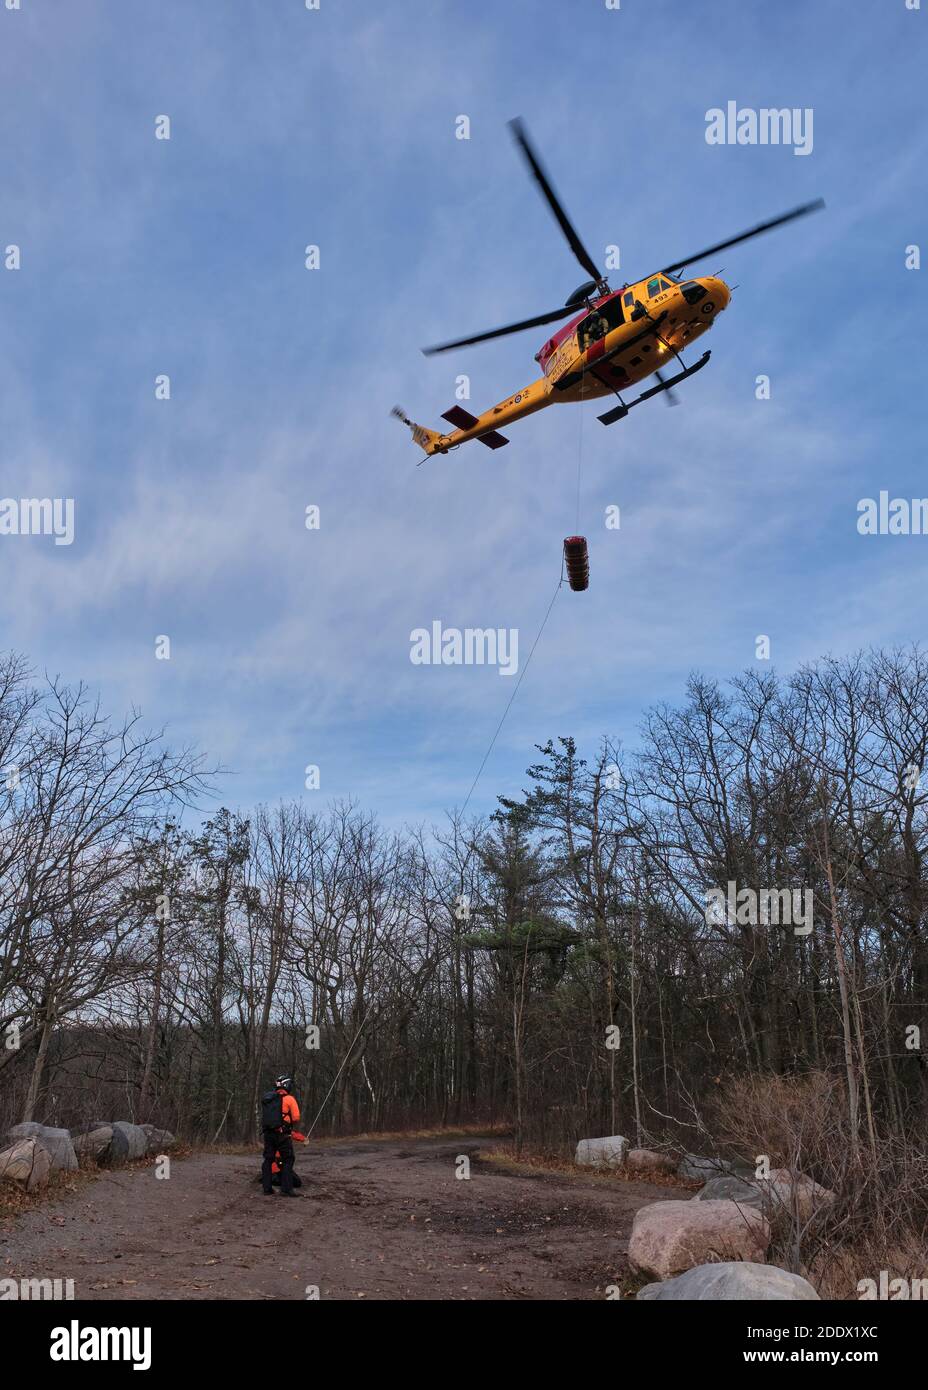 Northumberland County Forest, Ontario, Canada - le 19 novembre 2020 : un hélicoptère Griffon des Forces armées canadiennes avec des techniciens en recherche et sauvetage prat Banque D'Images